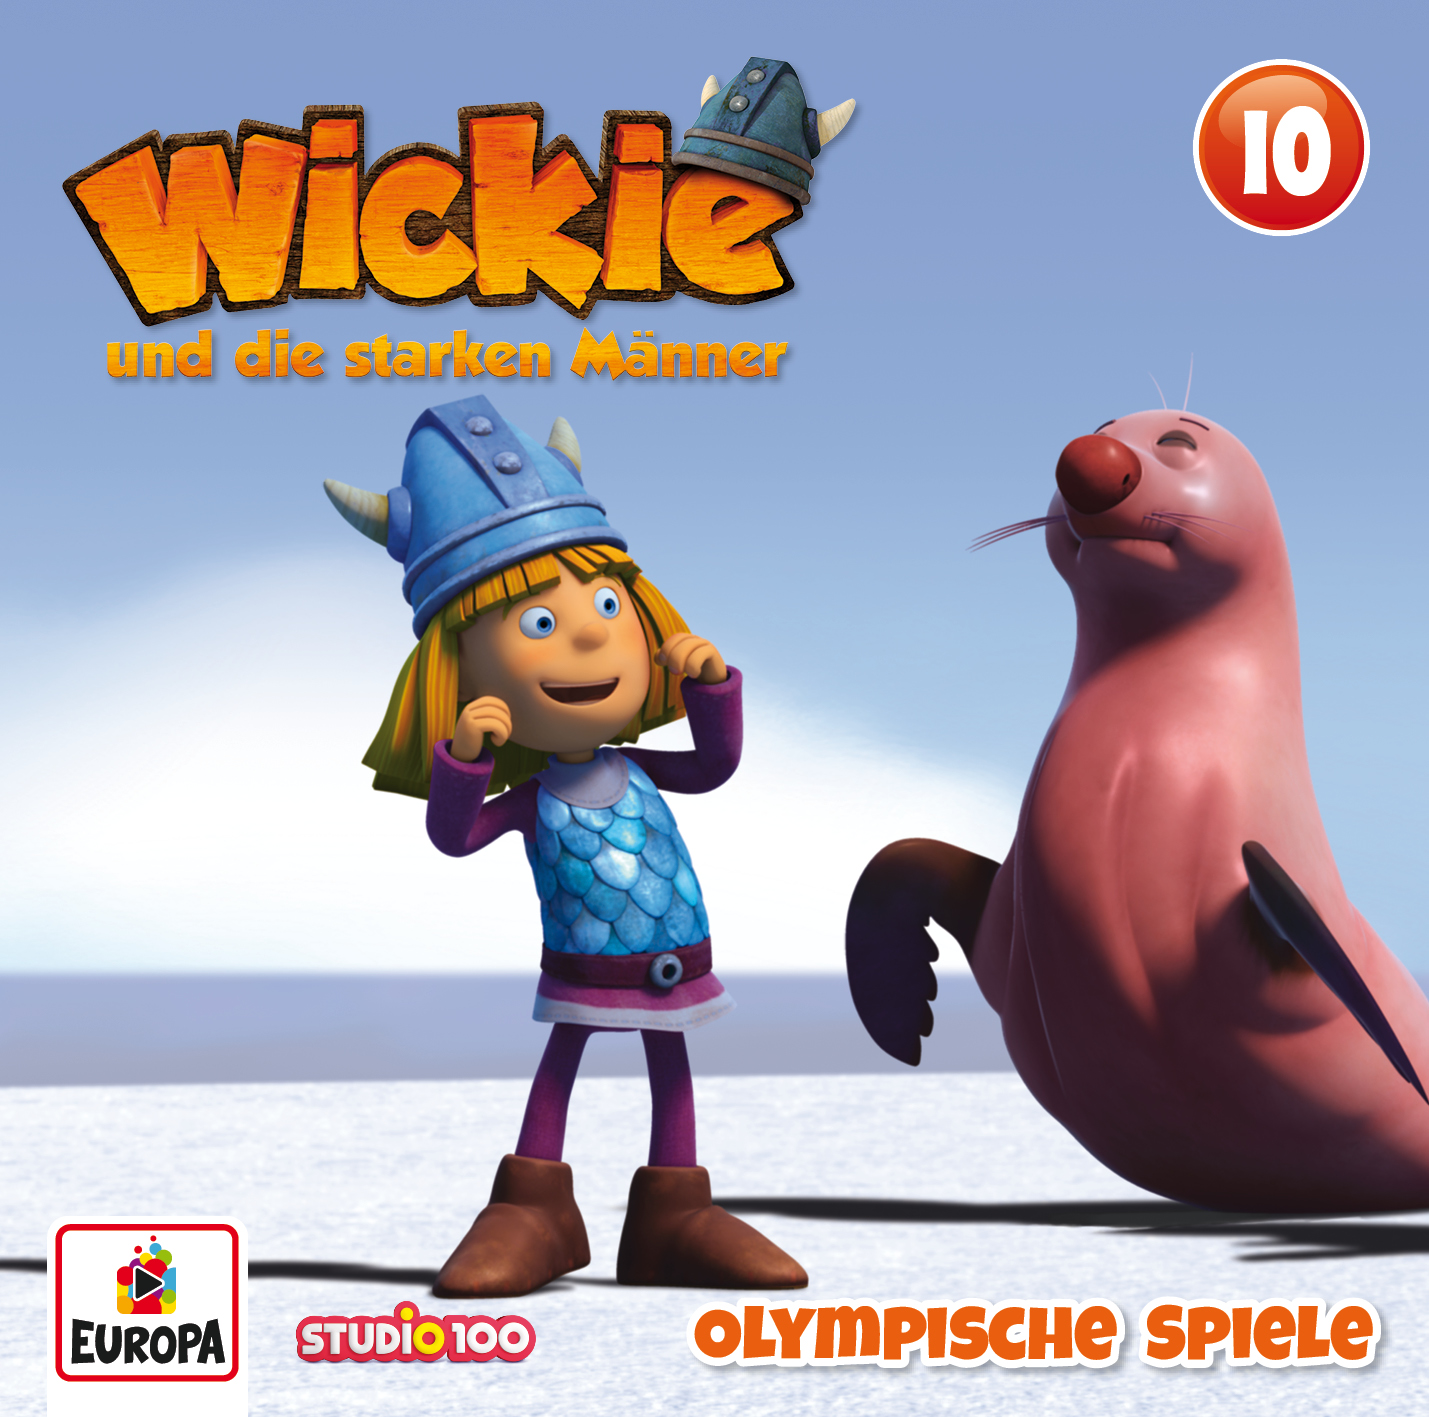 Wickie: Olympische Spiele (CGI)